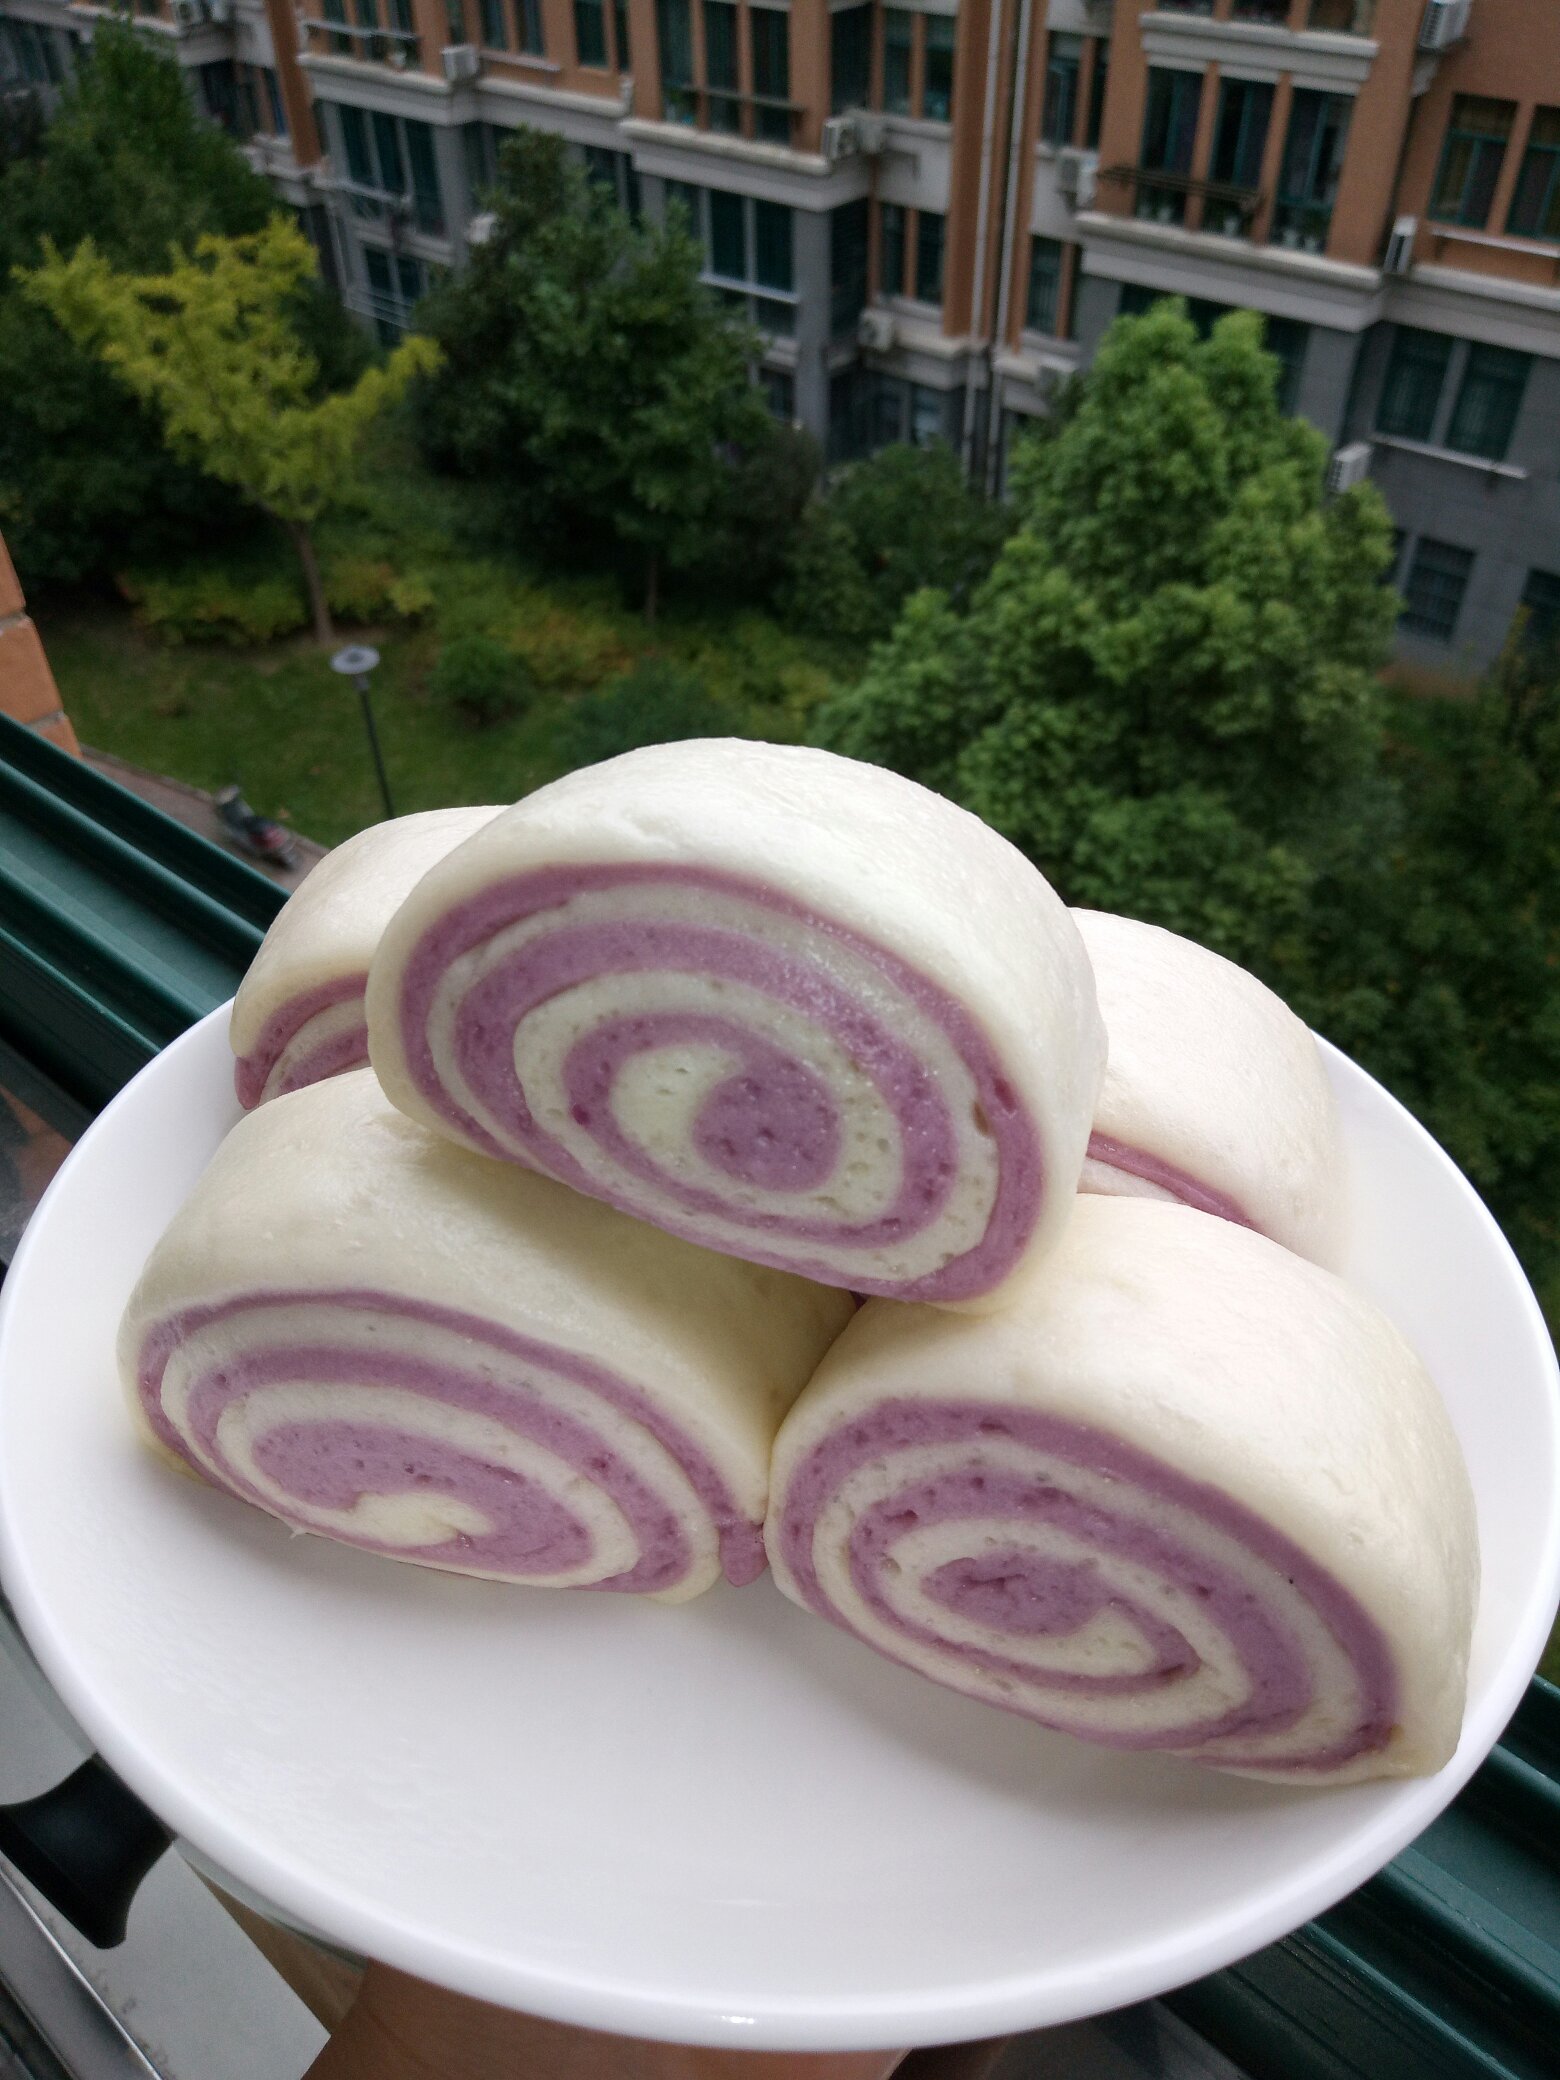 双色紫薯馒头